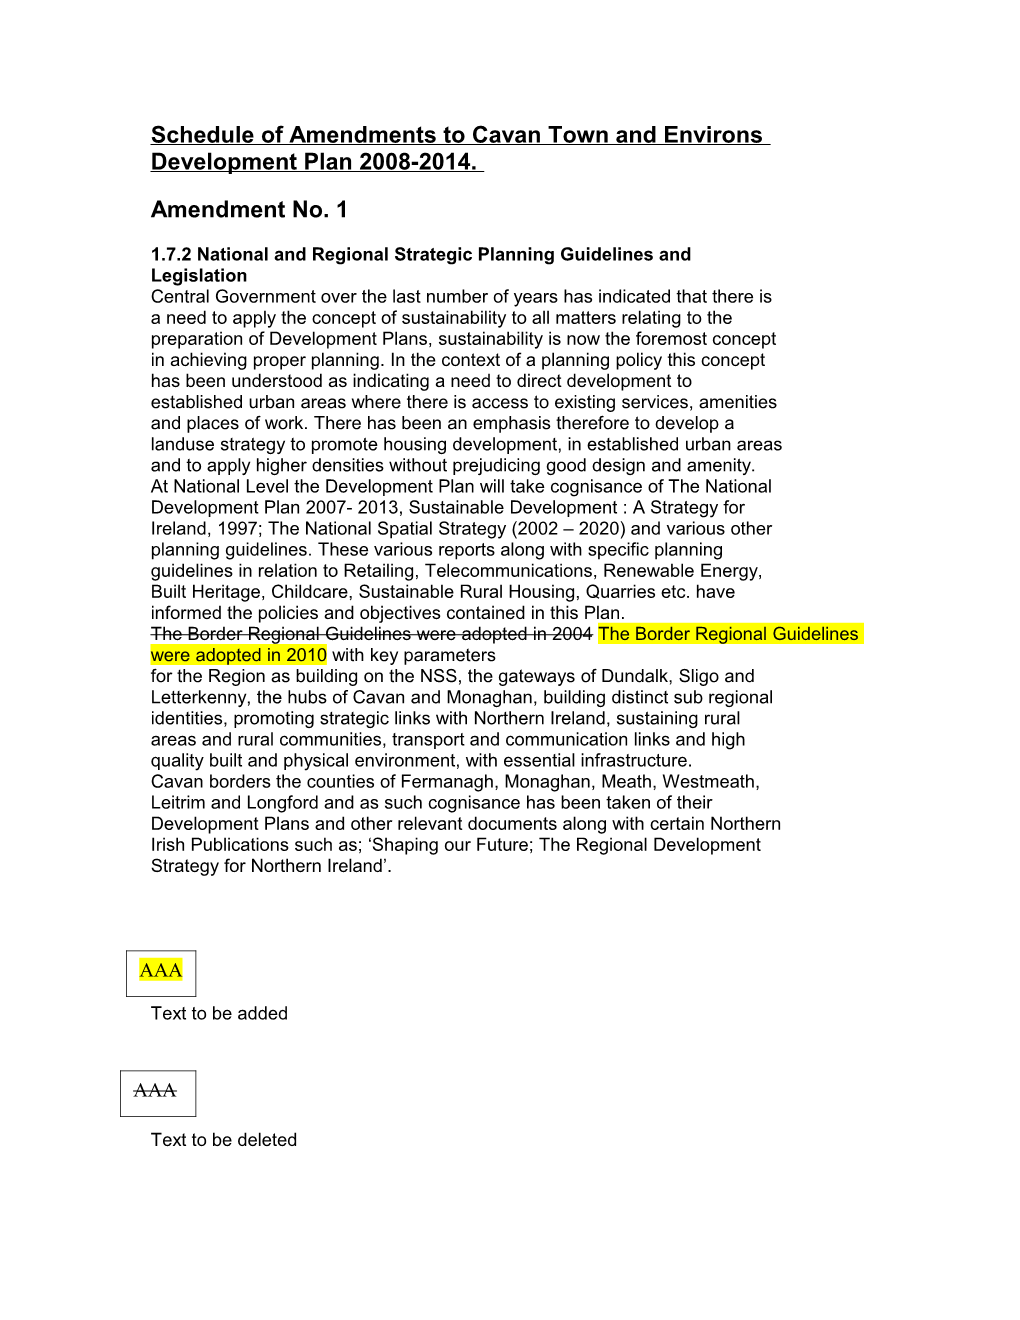 Schedule of Amendements to Cavantown and Environs Devleopment Plan 2008-2014